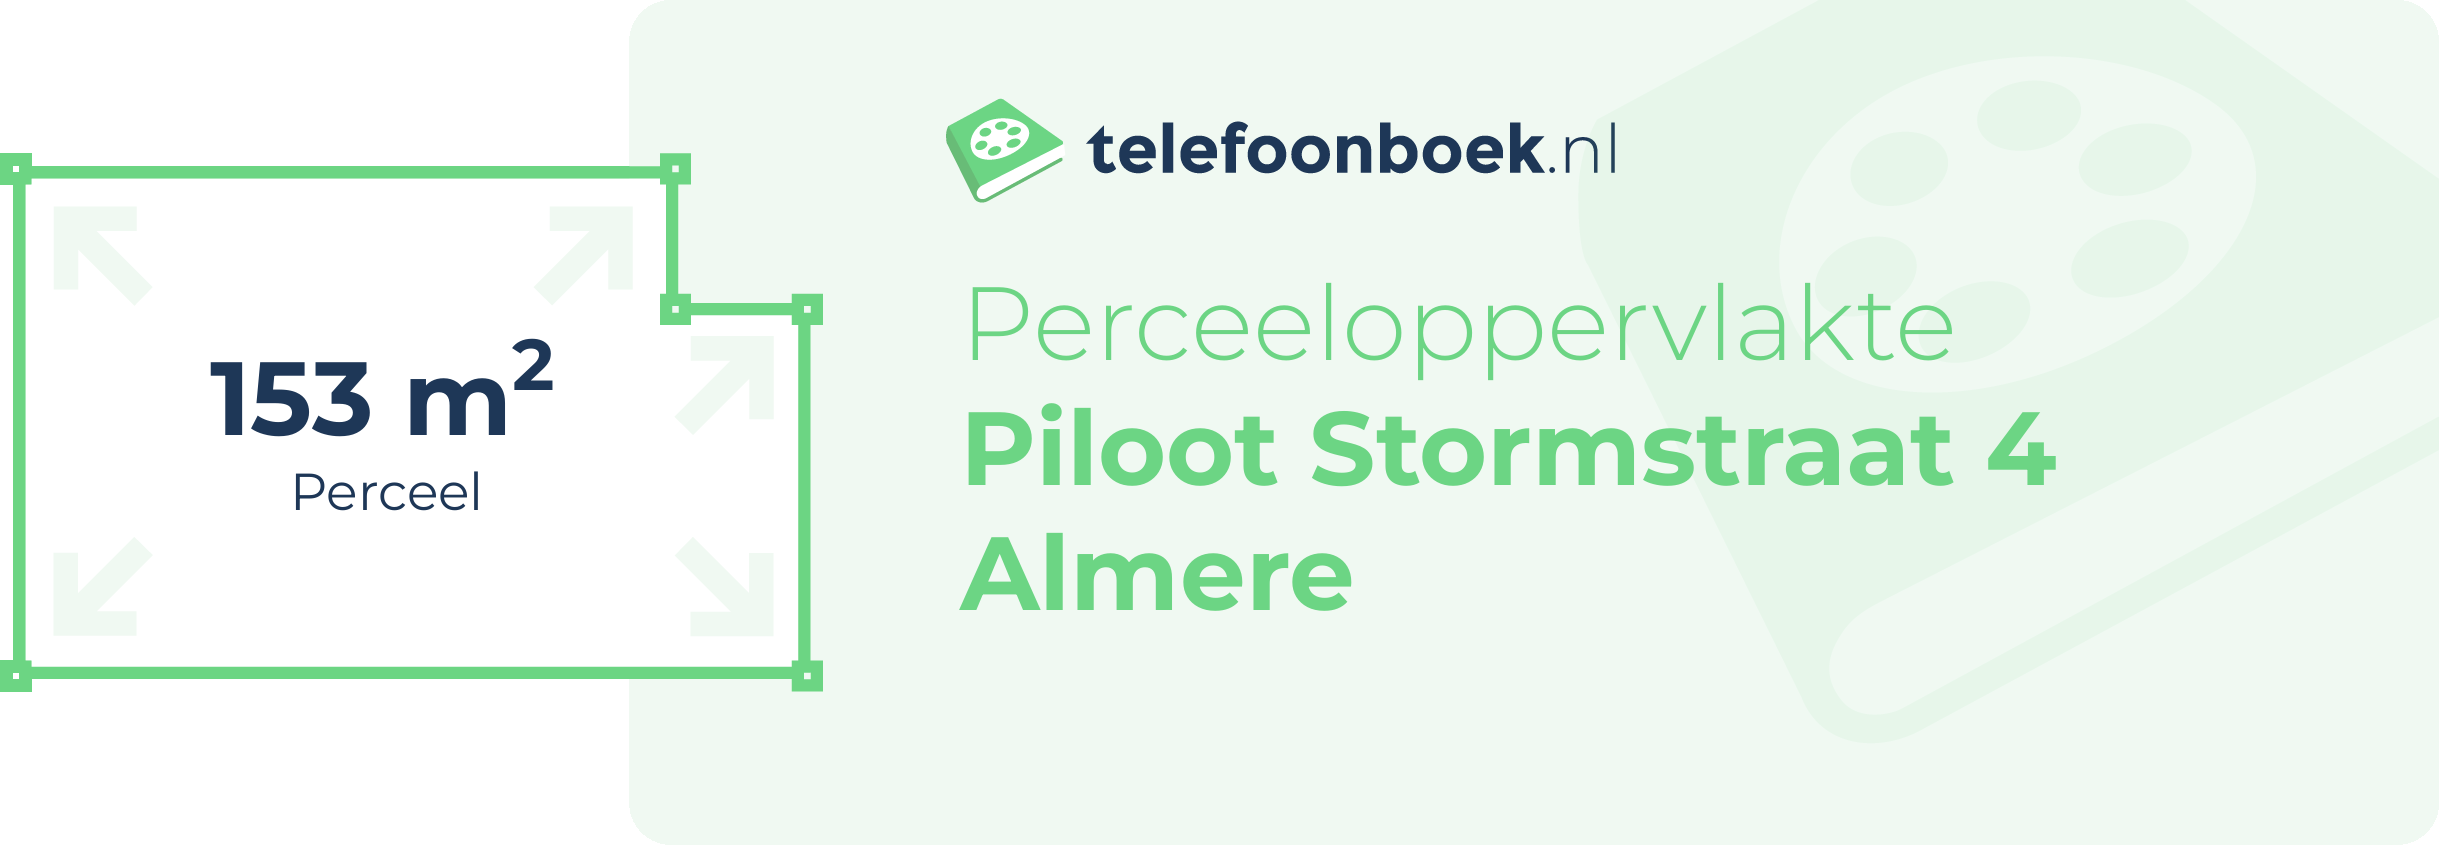 Perceeloppervlakte Piloot Stormstraat 4 Almere